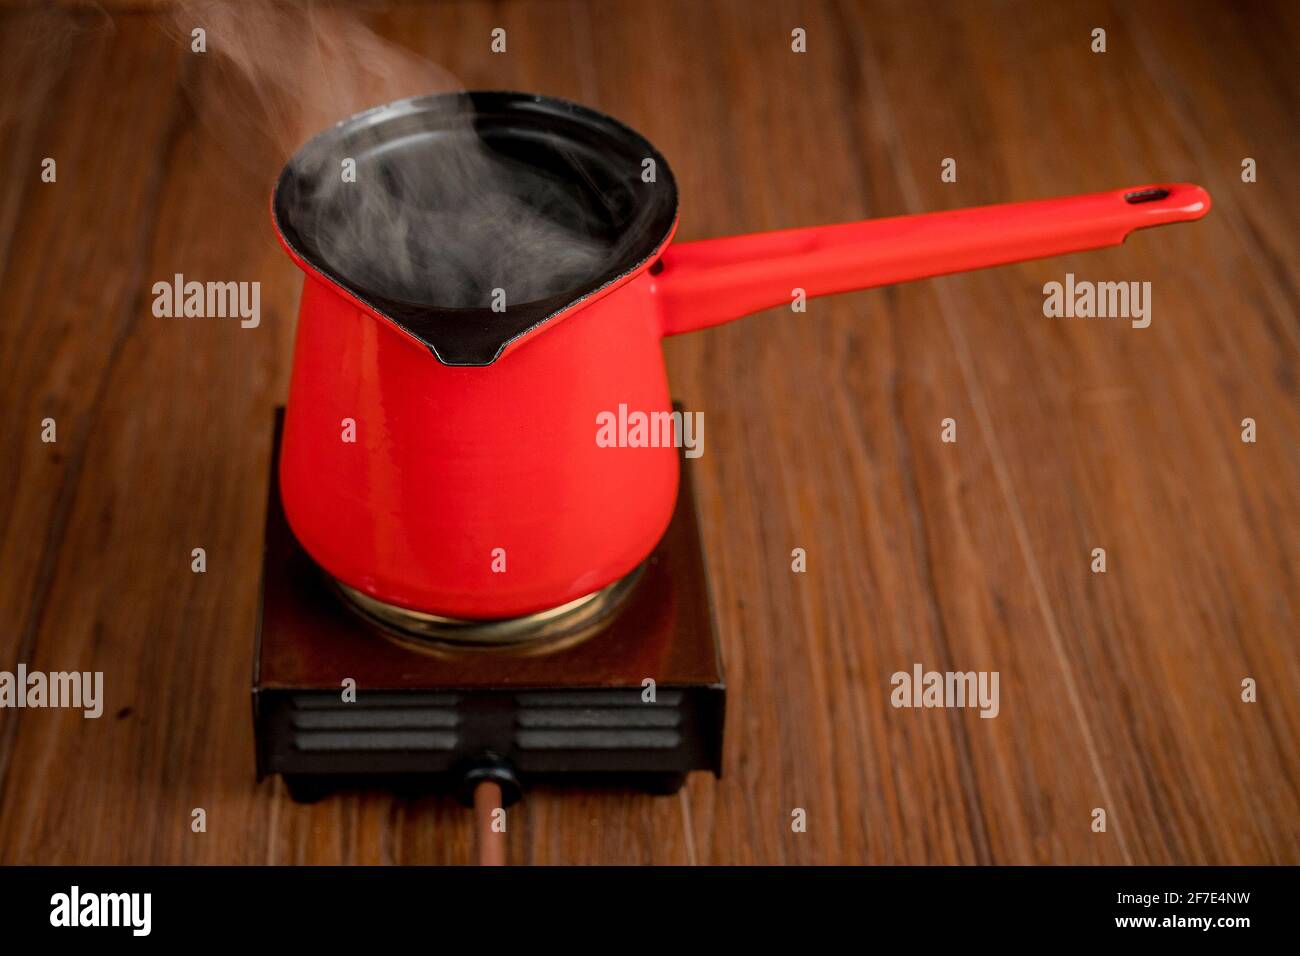 Petite cuisinière électrique mobile à plaque simple avec une cafetière rouge. De la vapeur ou de la fumée s'échappe de la cuve pendant la préparation du café ou d'une autre boisson chaude Banque D'Images